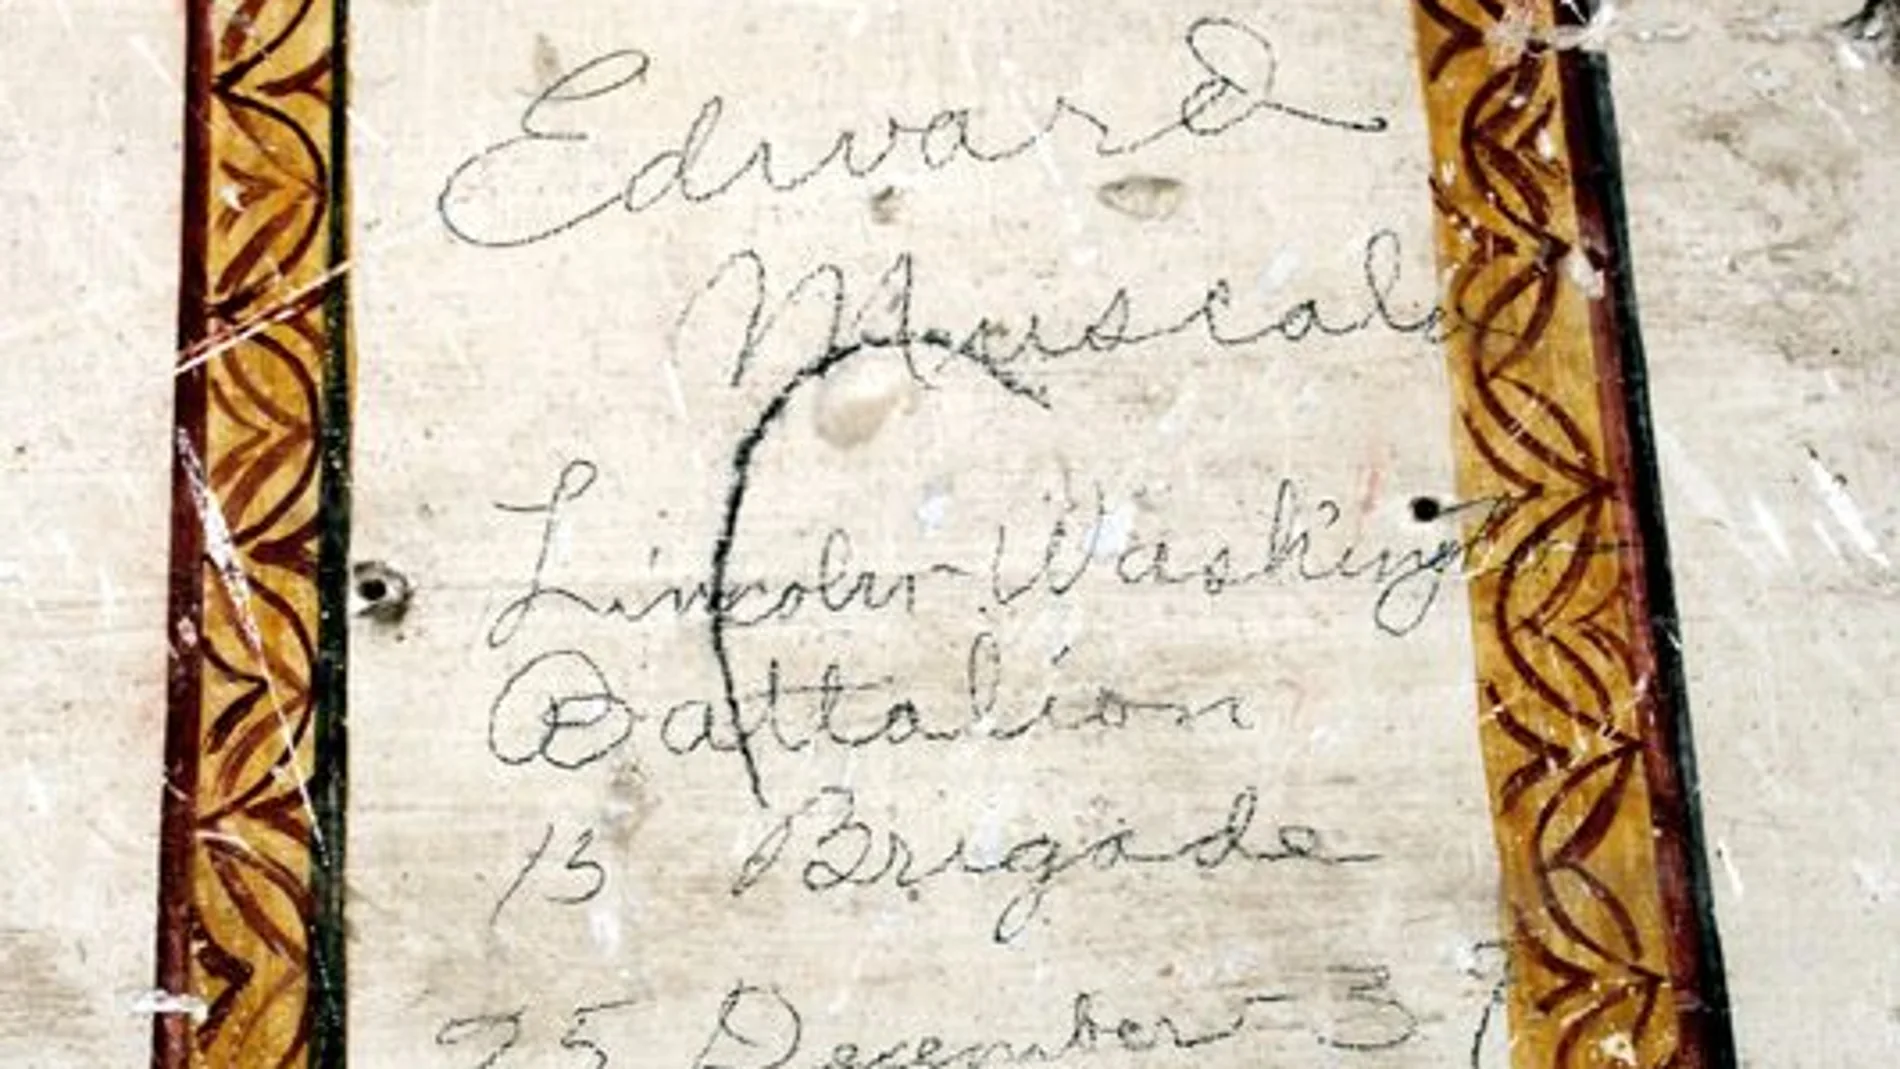 La inscripción que el brigadista Edward Muscala realizó en una ermita el día de Navidad de 1937 antes de ser cubierta con pintura negra en 2020